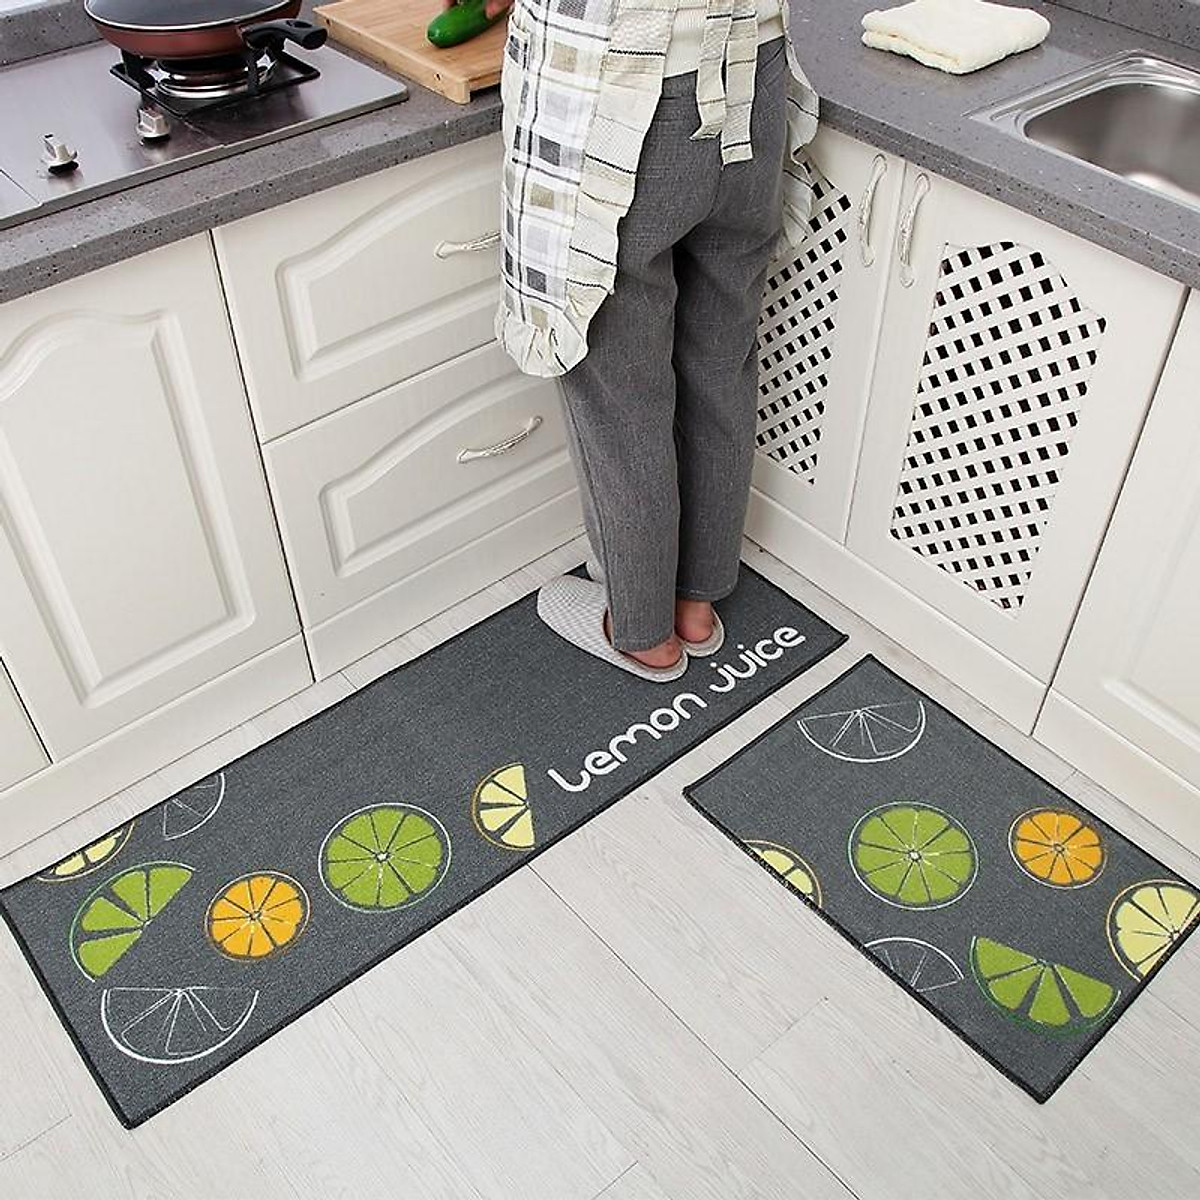 Thảm trải sàn nhà bếp: Bạn đang tìm kiếm một giải pháp đơn giản và tiện lợi cho sàn nhà bếp của mình? Hãy cùng xem những mẫu thảm trải sàn nhà bếp đẹp mắt, dễ dàng lau chùi và giữ vệ sinh hiệu quả.